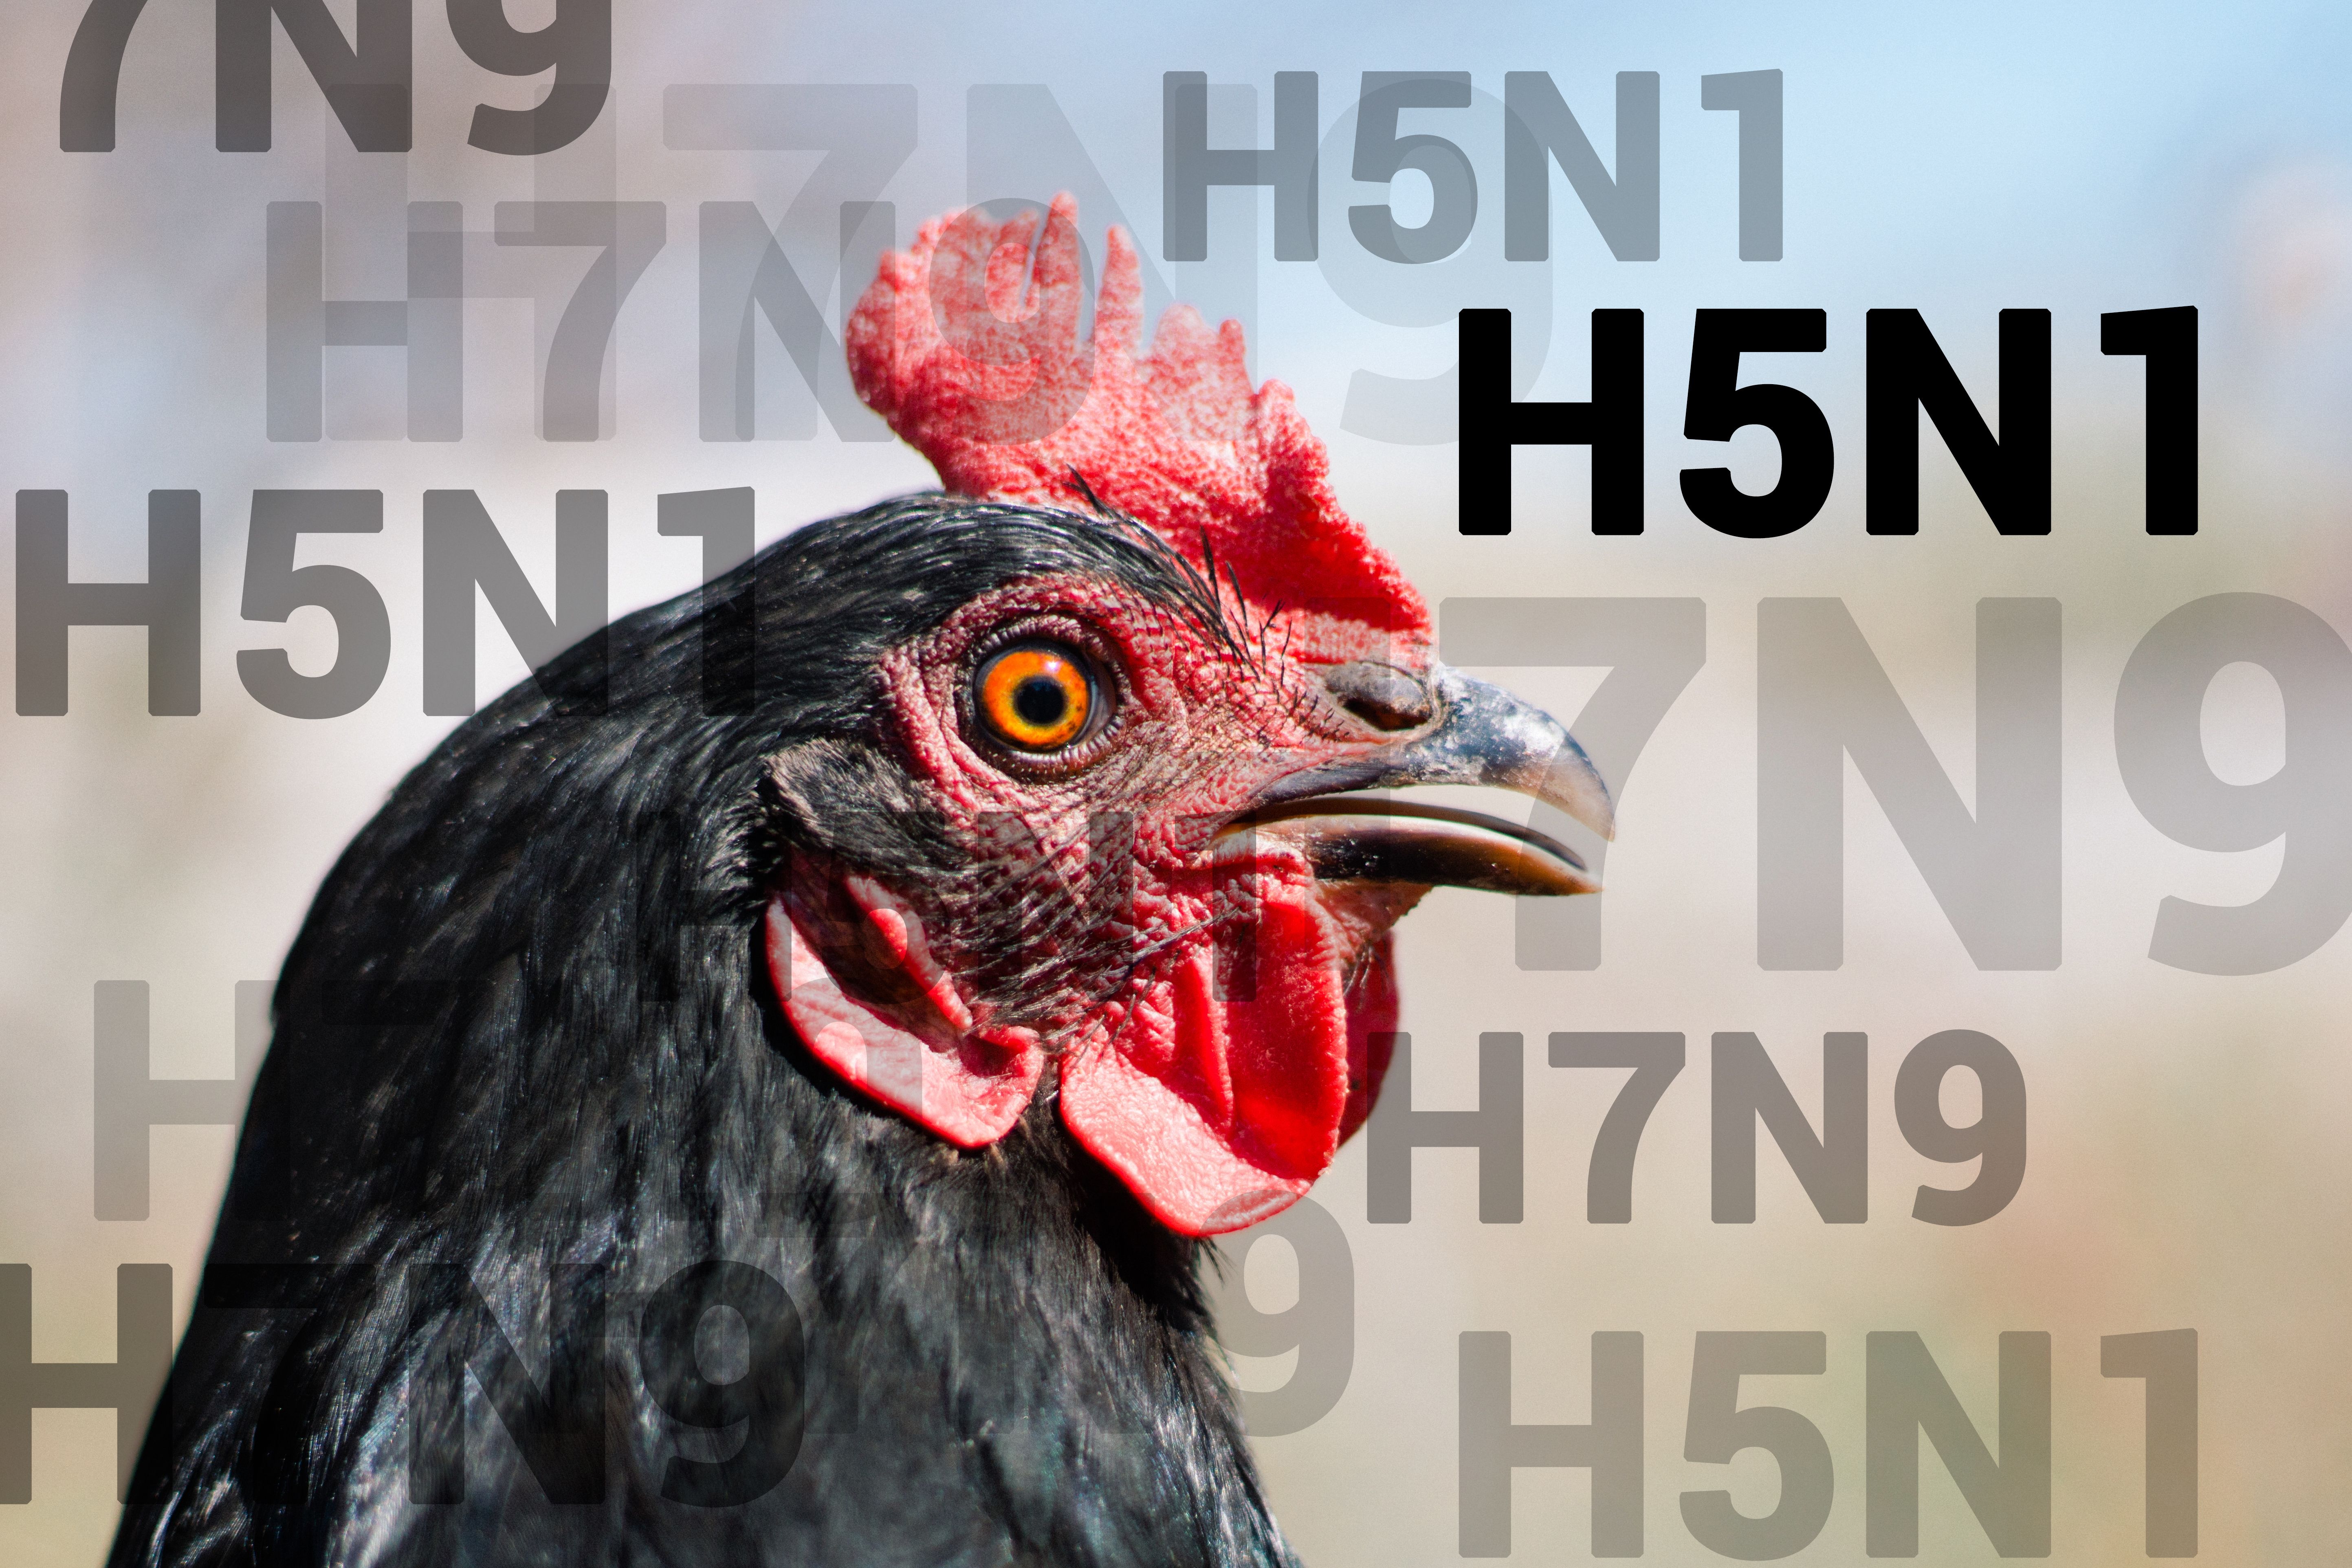 Hong Kong Confirms Human Case of Avian Flu, as Colorado Reports Mass Bird Deaths